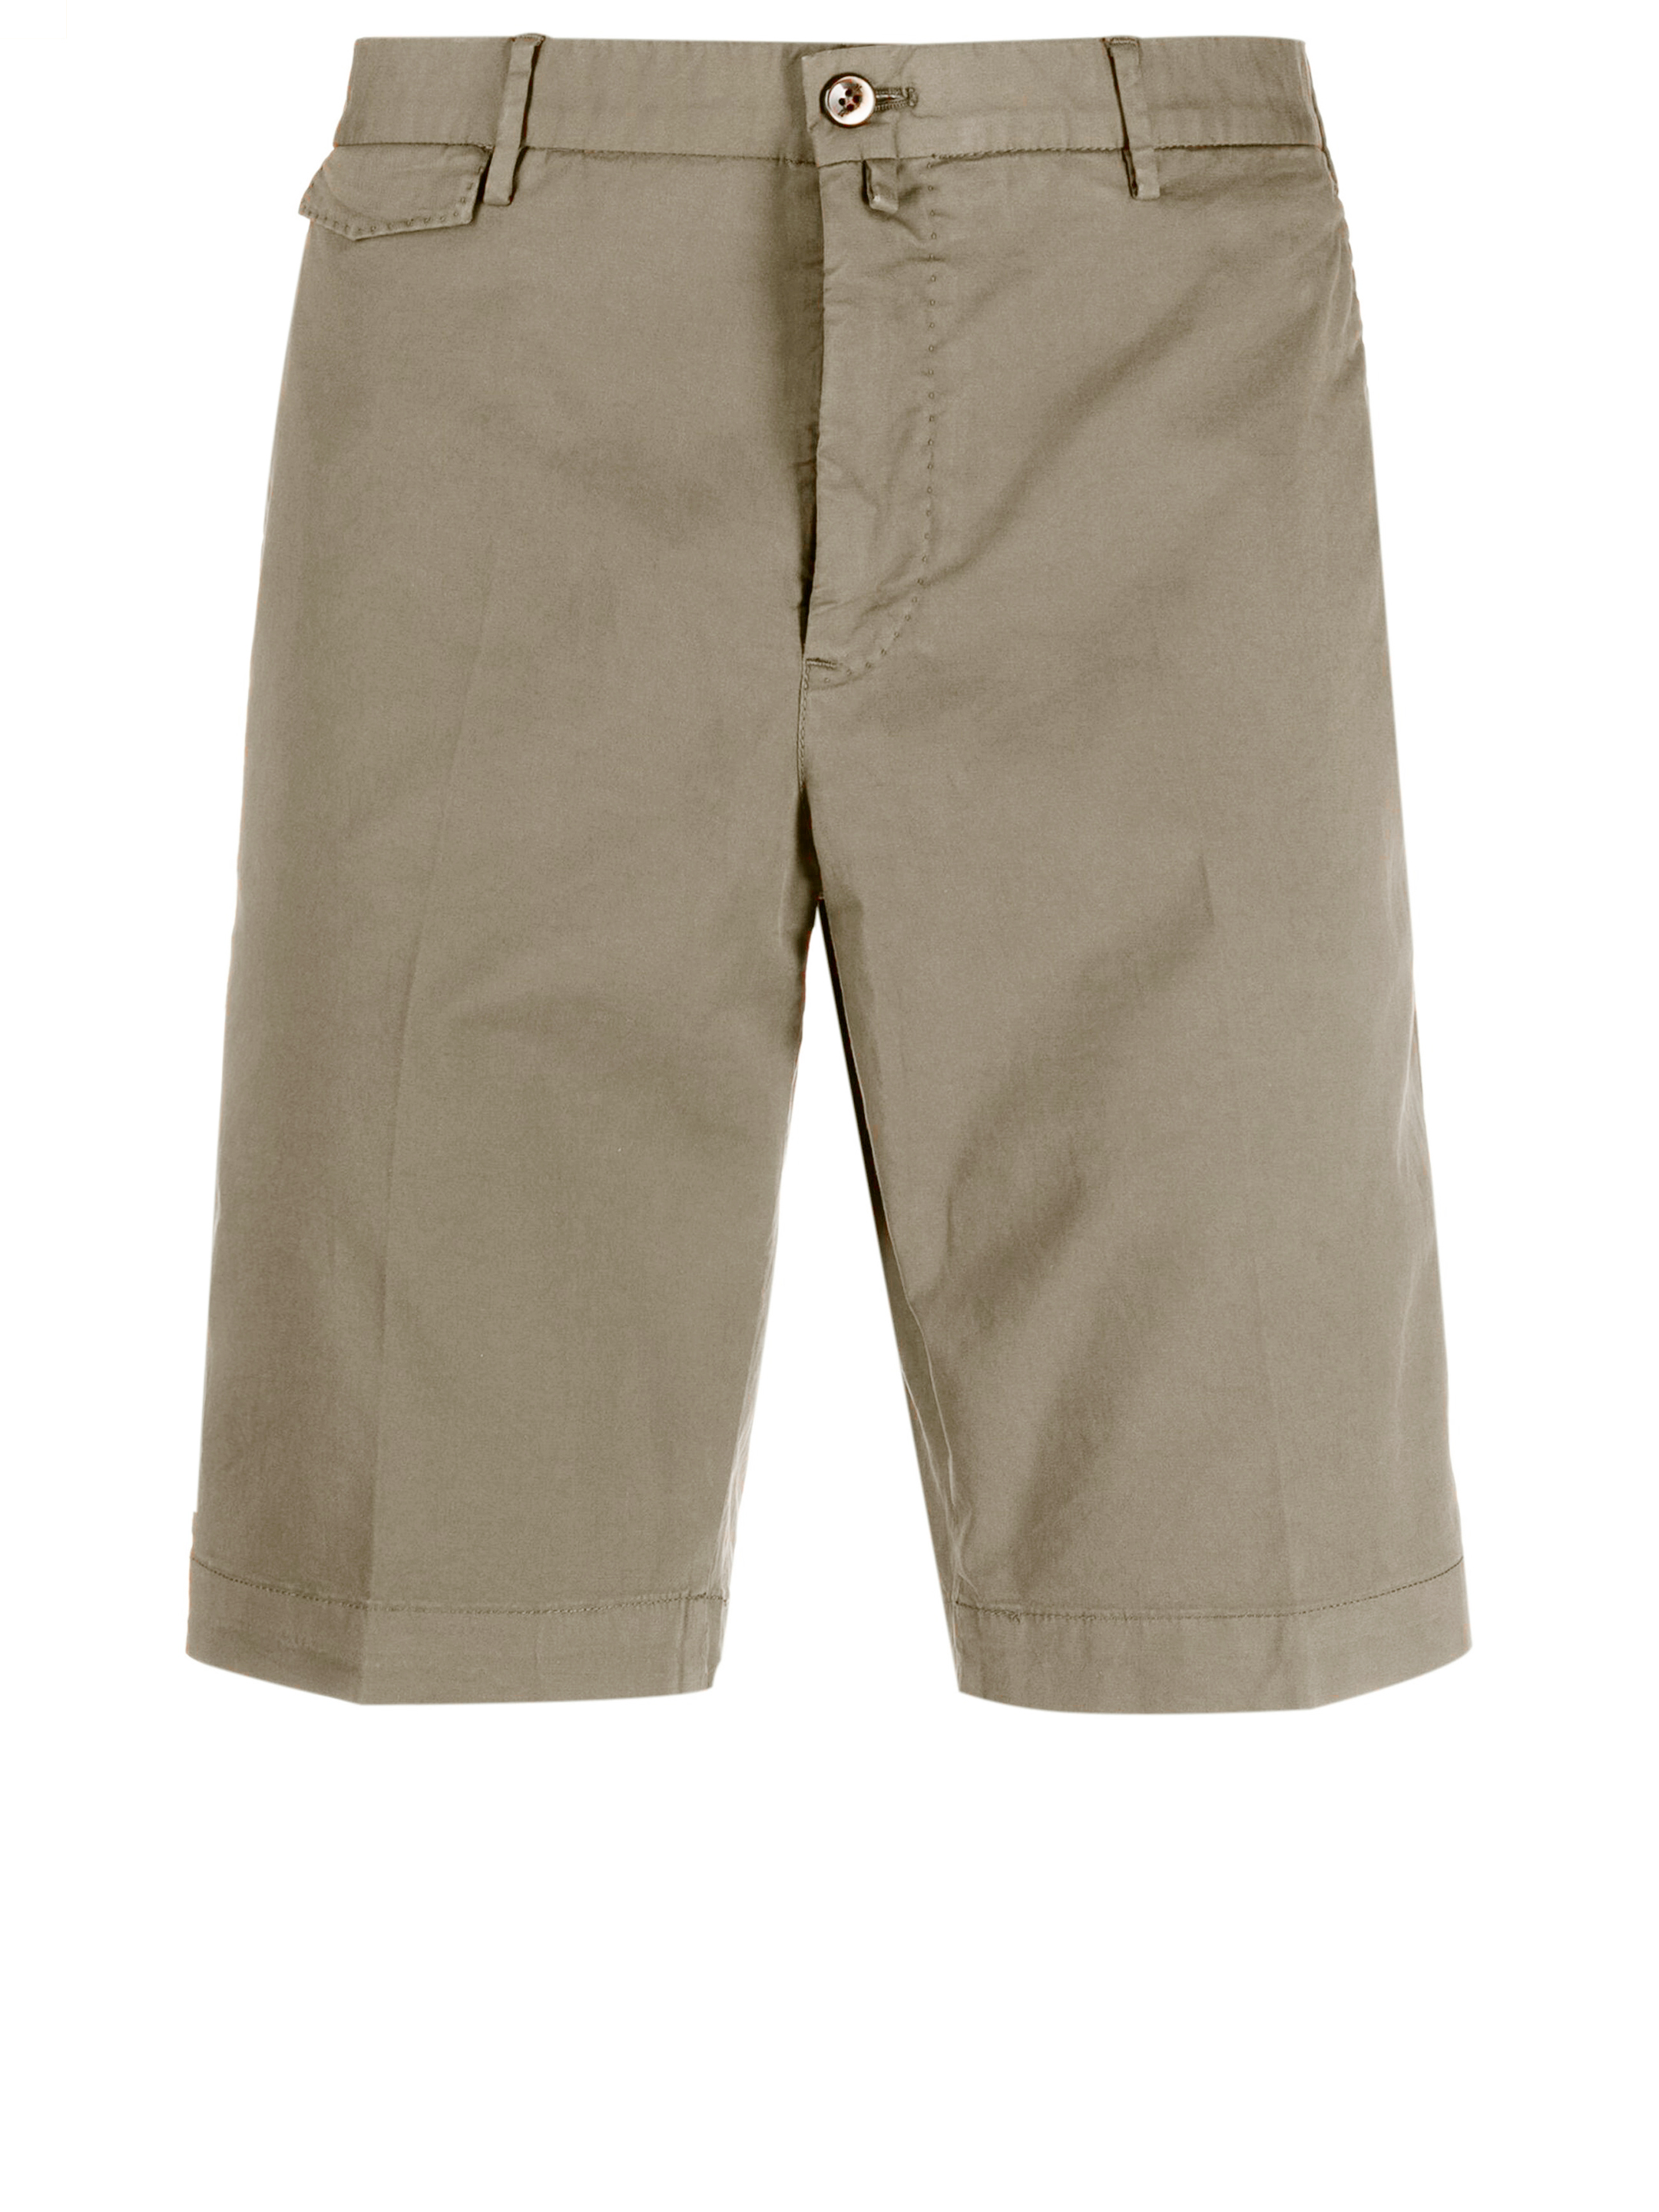 Pt Torino Cotton Bermuda Shorts In Beige